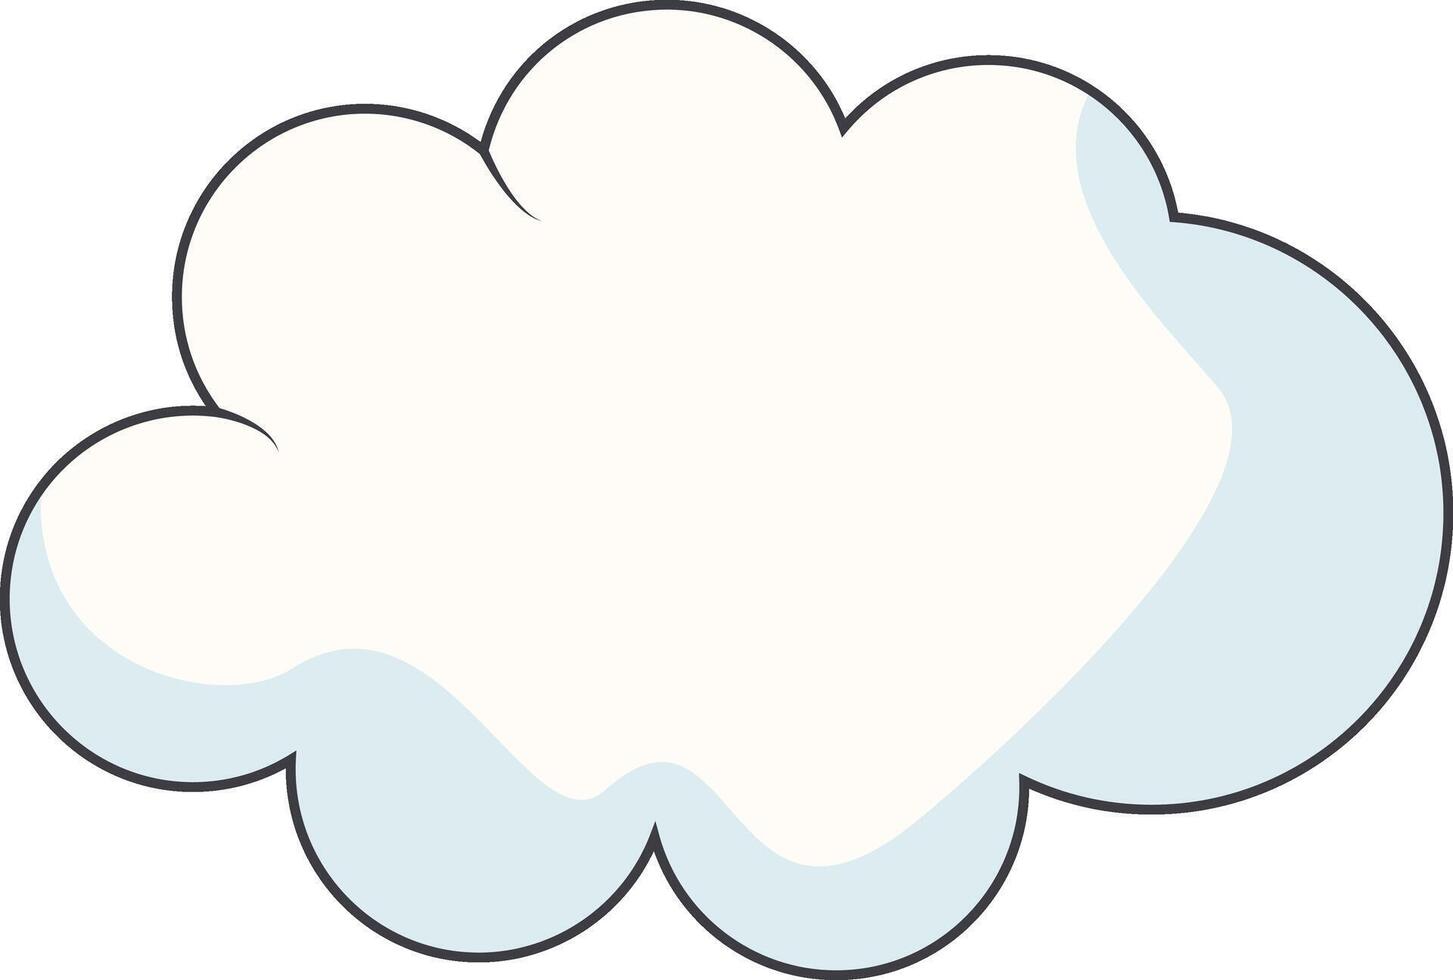 Karikatur Wolken auf Weiß Hintergrund. zum Comic Ornament vektor